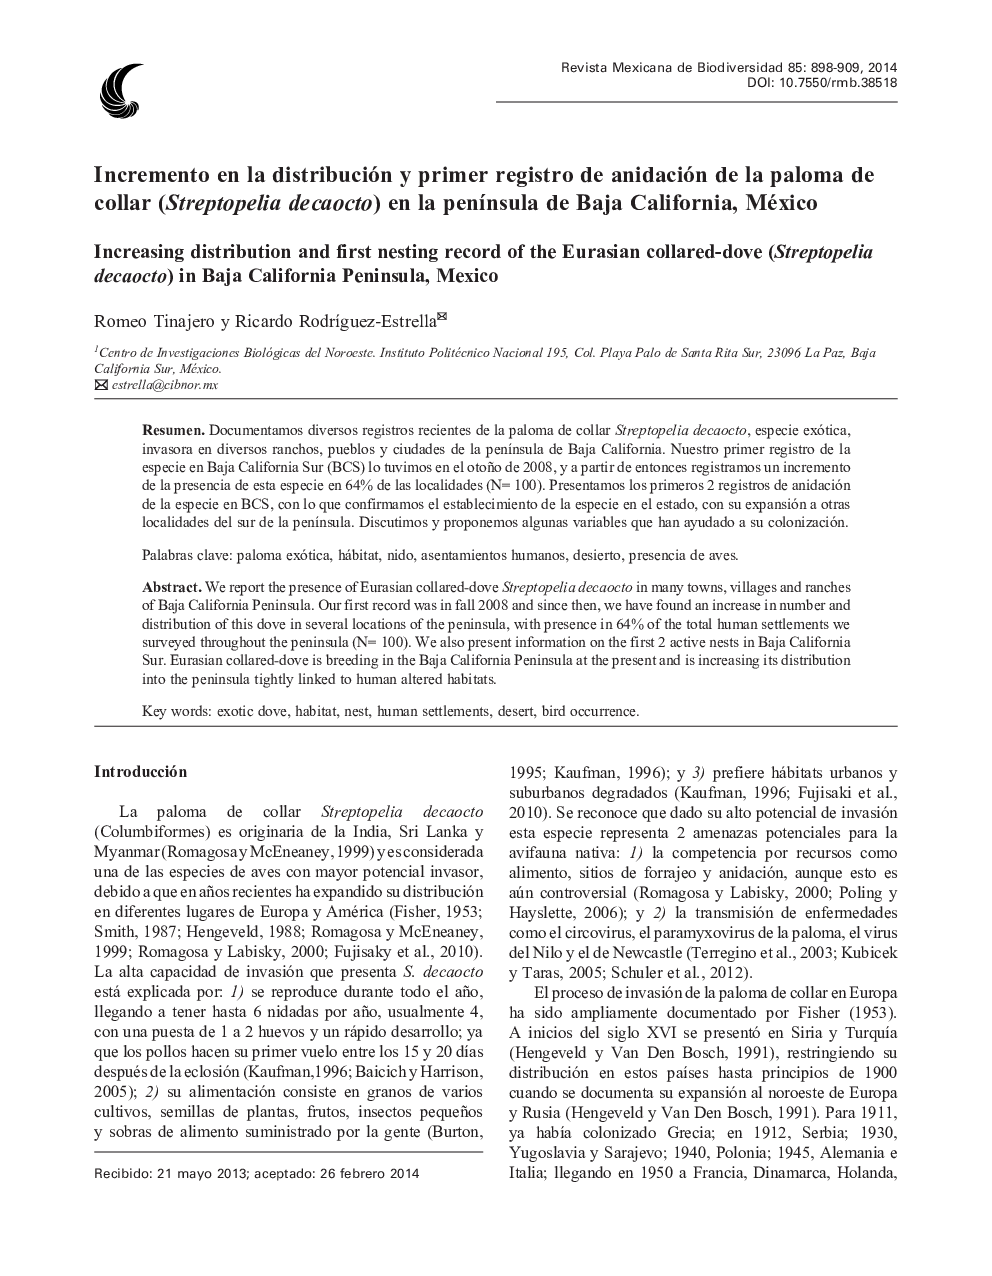 Incremento en la distribución y primer registro de anidación de la paloma de collar (Streptopelia decaocto) en la península de Baja California, México